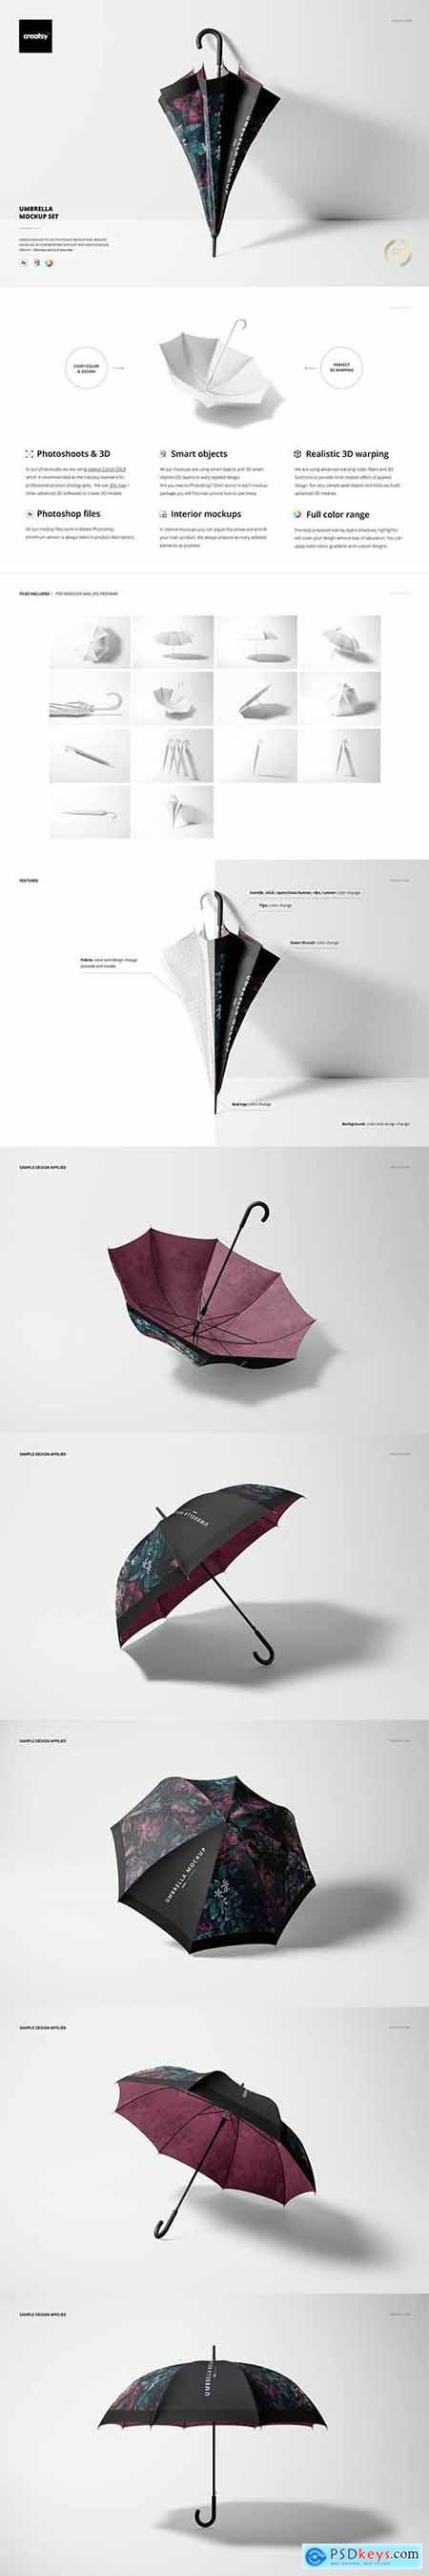 Umbrella Mockup Set 6817546